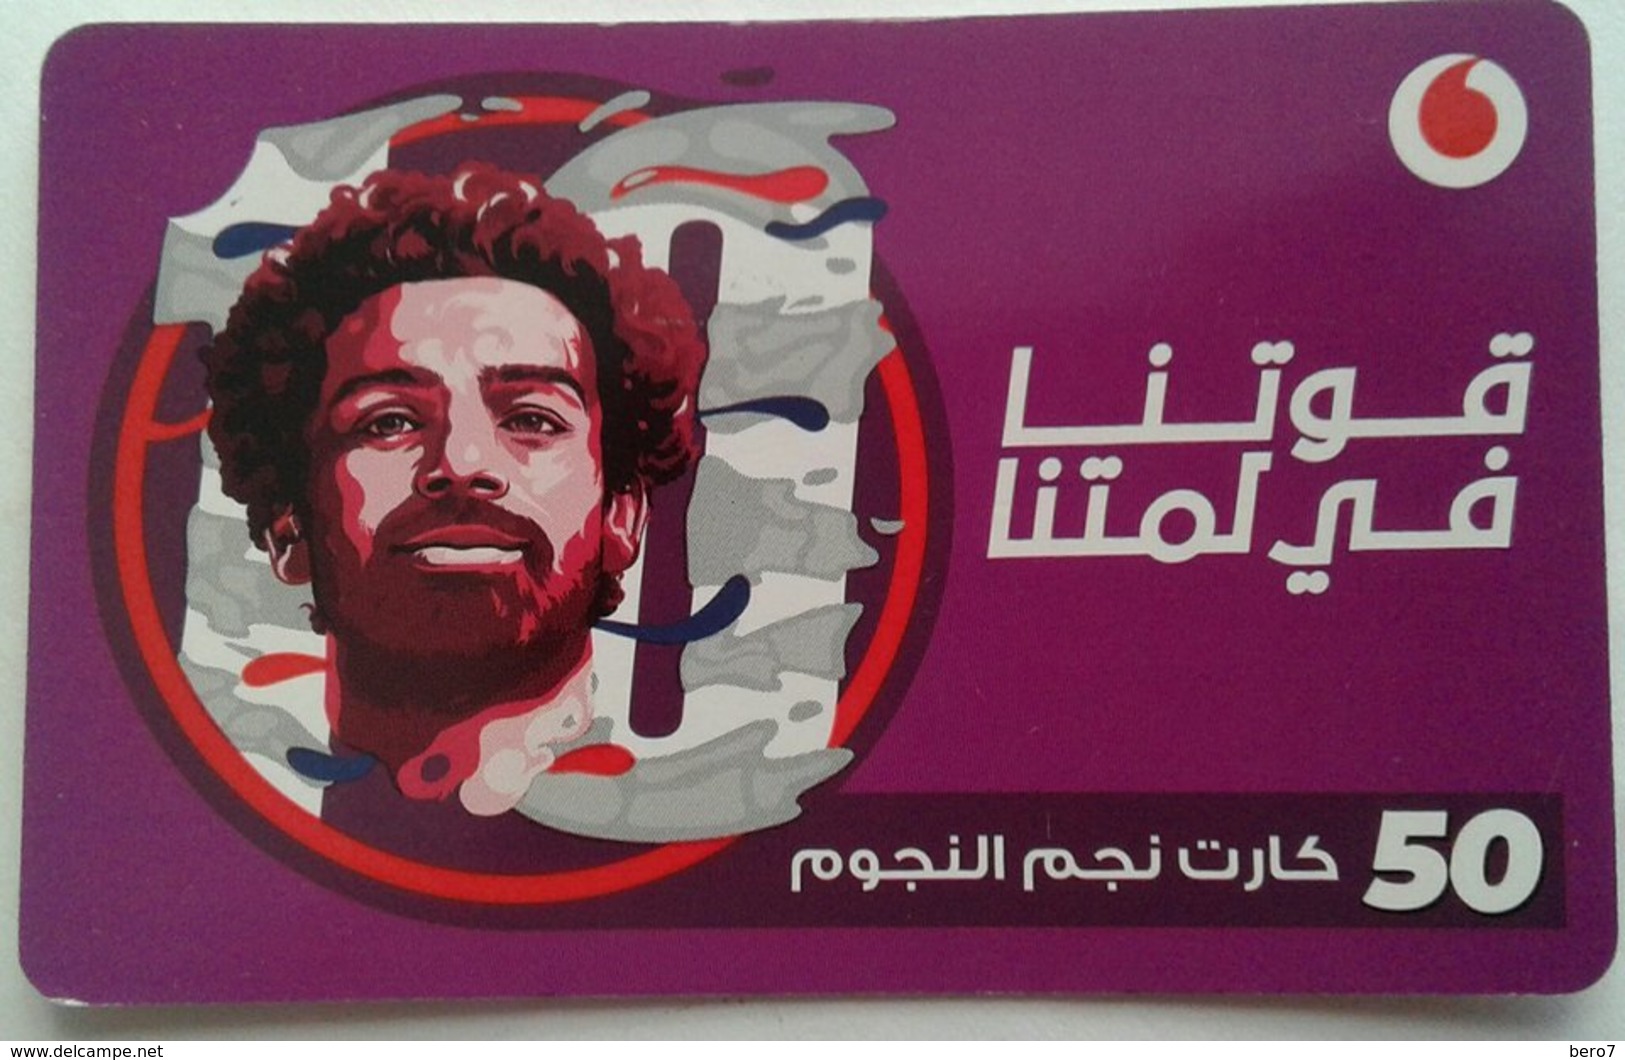 EGYPT - Egyptian Football Star "Mohamed Salah" 50 L.E, Vodafone , [used] (Egypte) (Egitto) (Ägypten) (Egipto) (Egypten) - Egipto